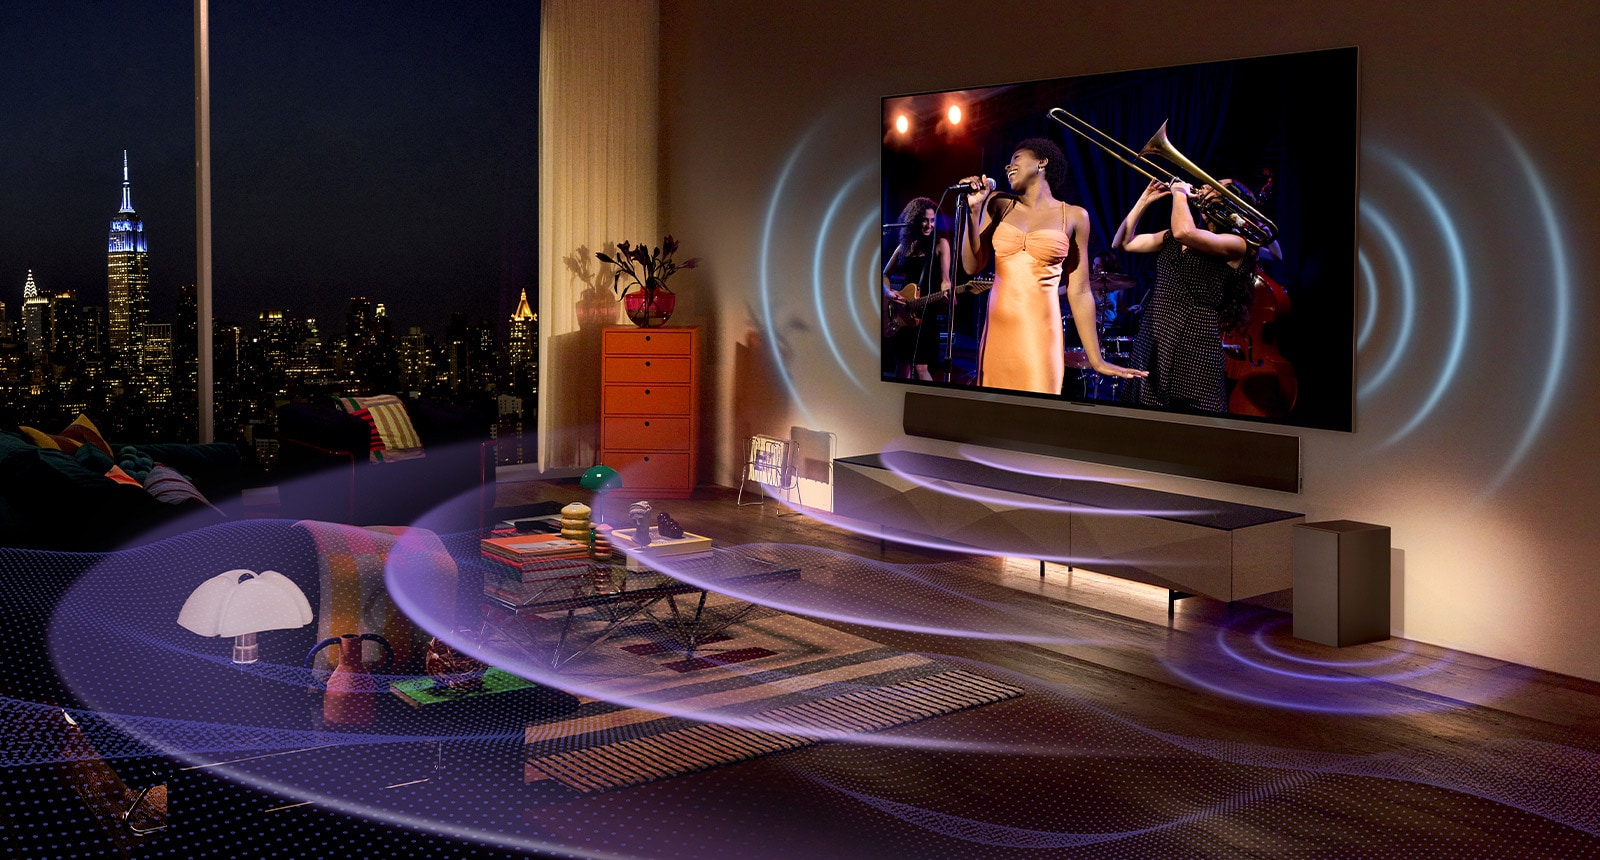 一張 LG OLED 電視在房間裡播放音樂會的圖片。 描繪電視聲音的藍色曲線和表達 Soundbar 聲音的紫色曲線充滿了整個空間。